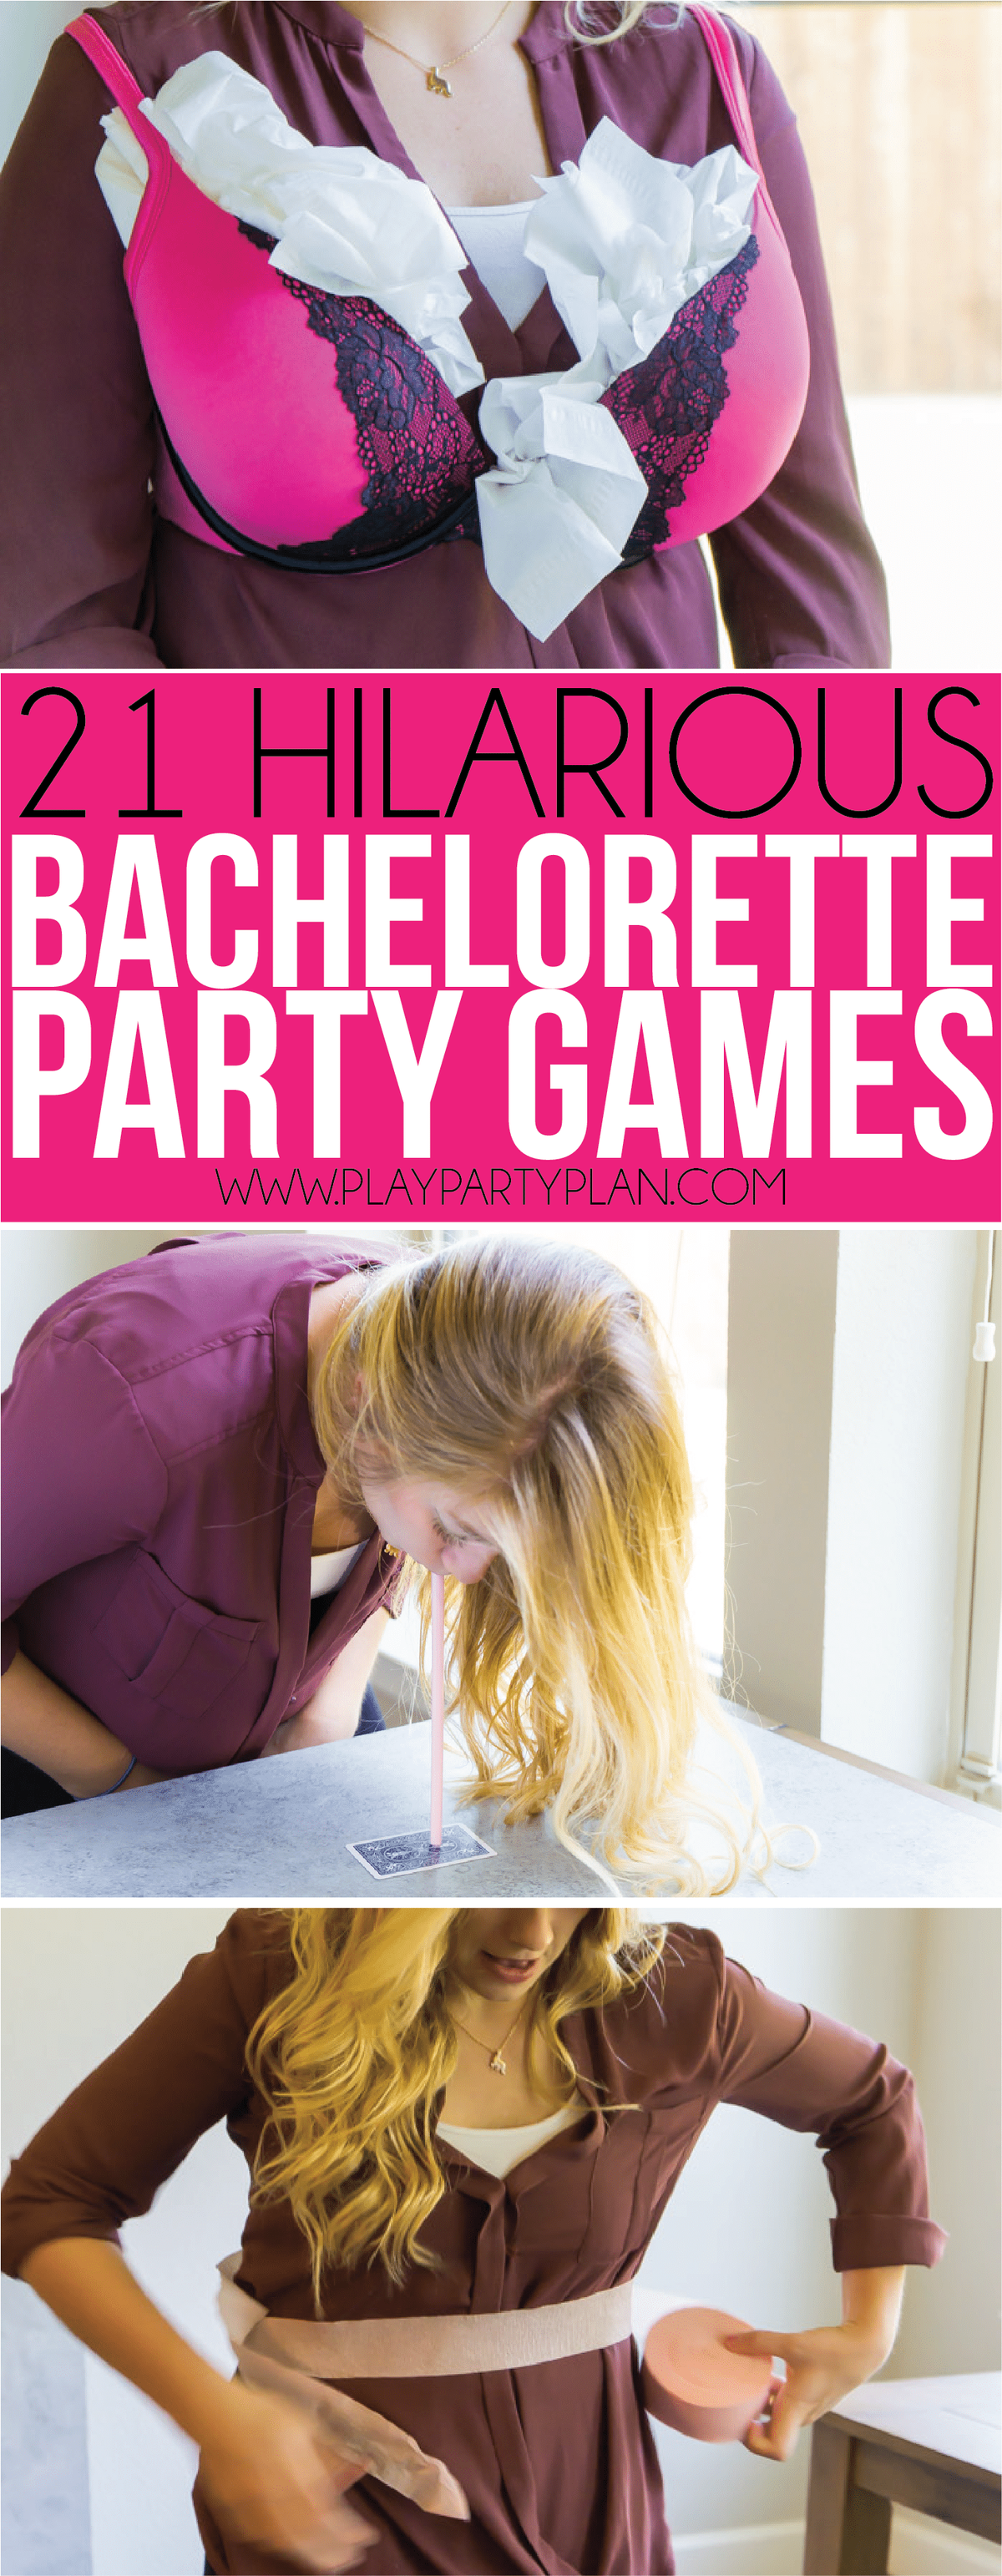 Η καλύτερη συλλογή παιχνιδιών πάρτι bachelorette ποτέ